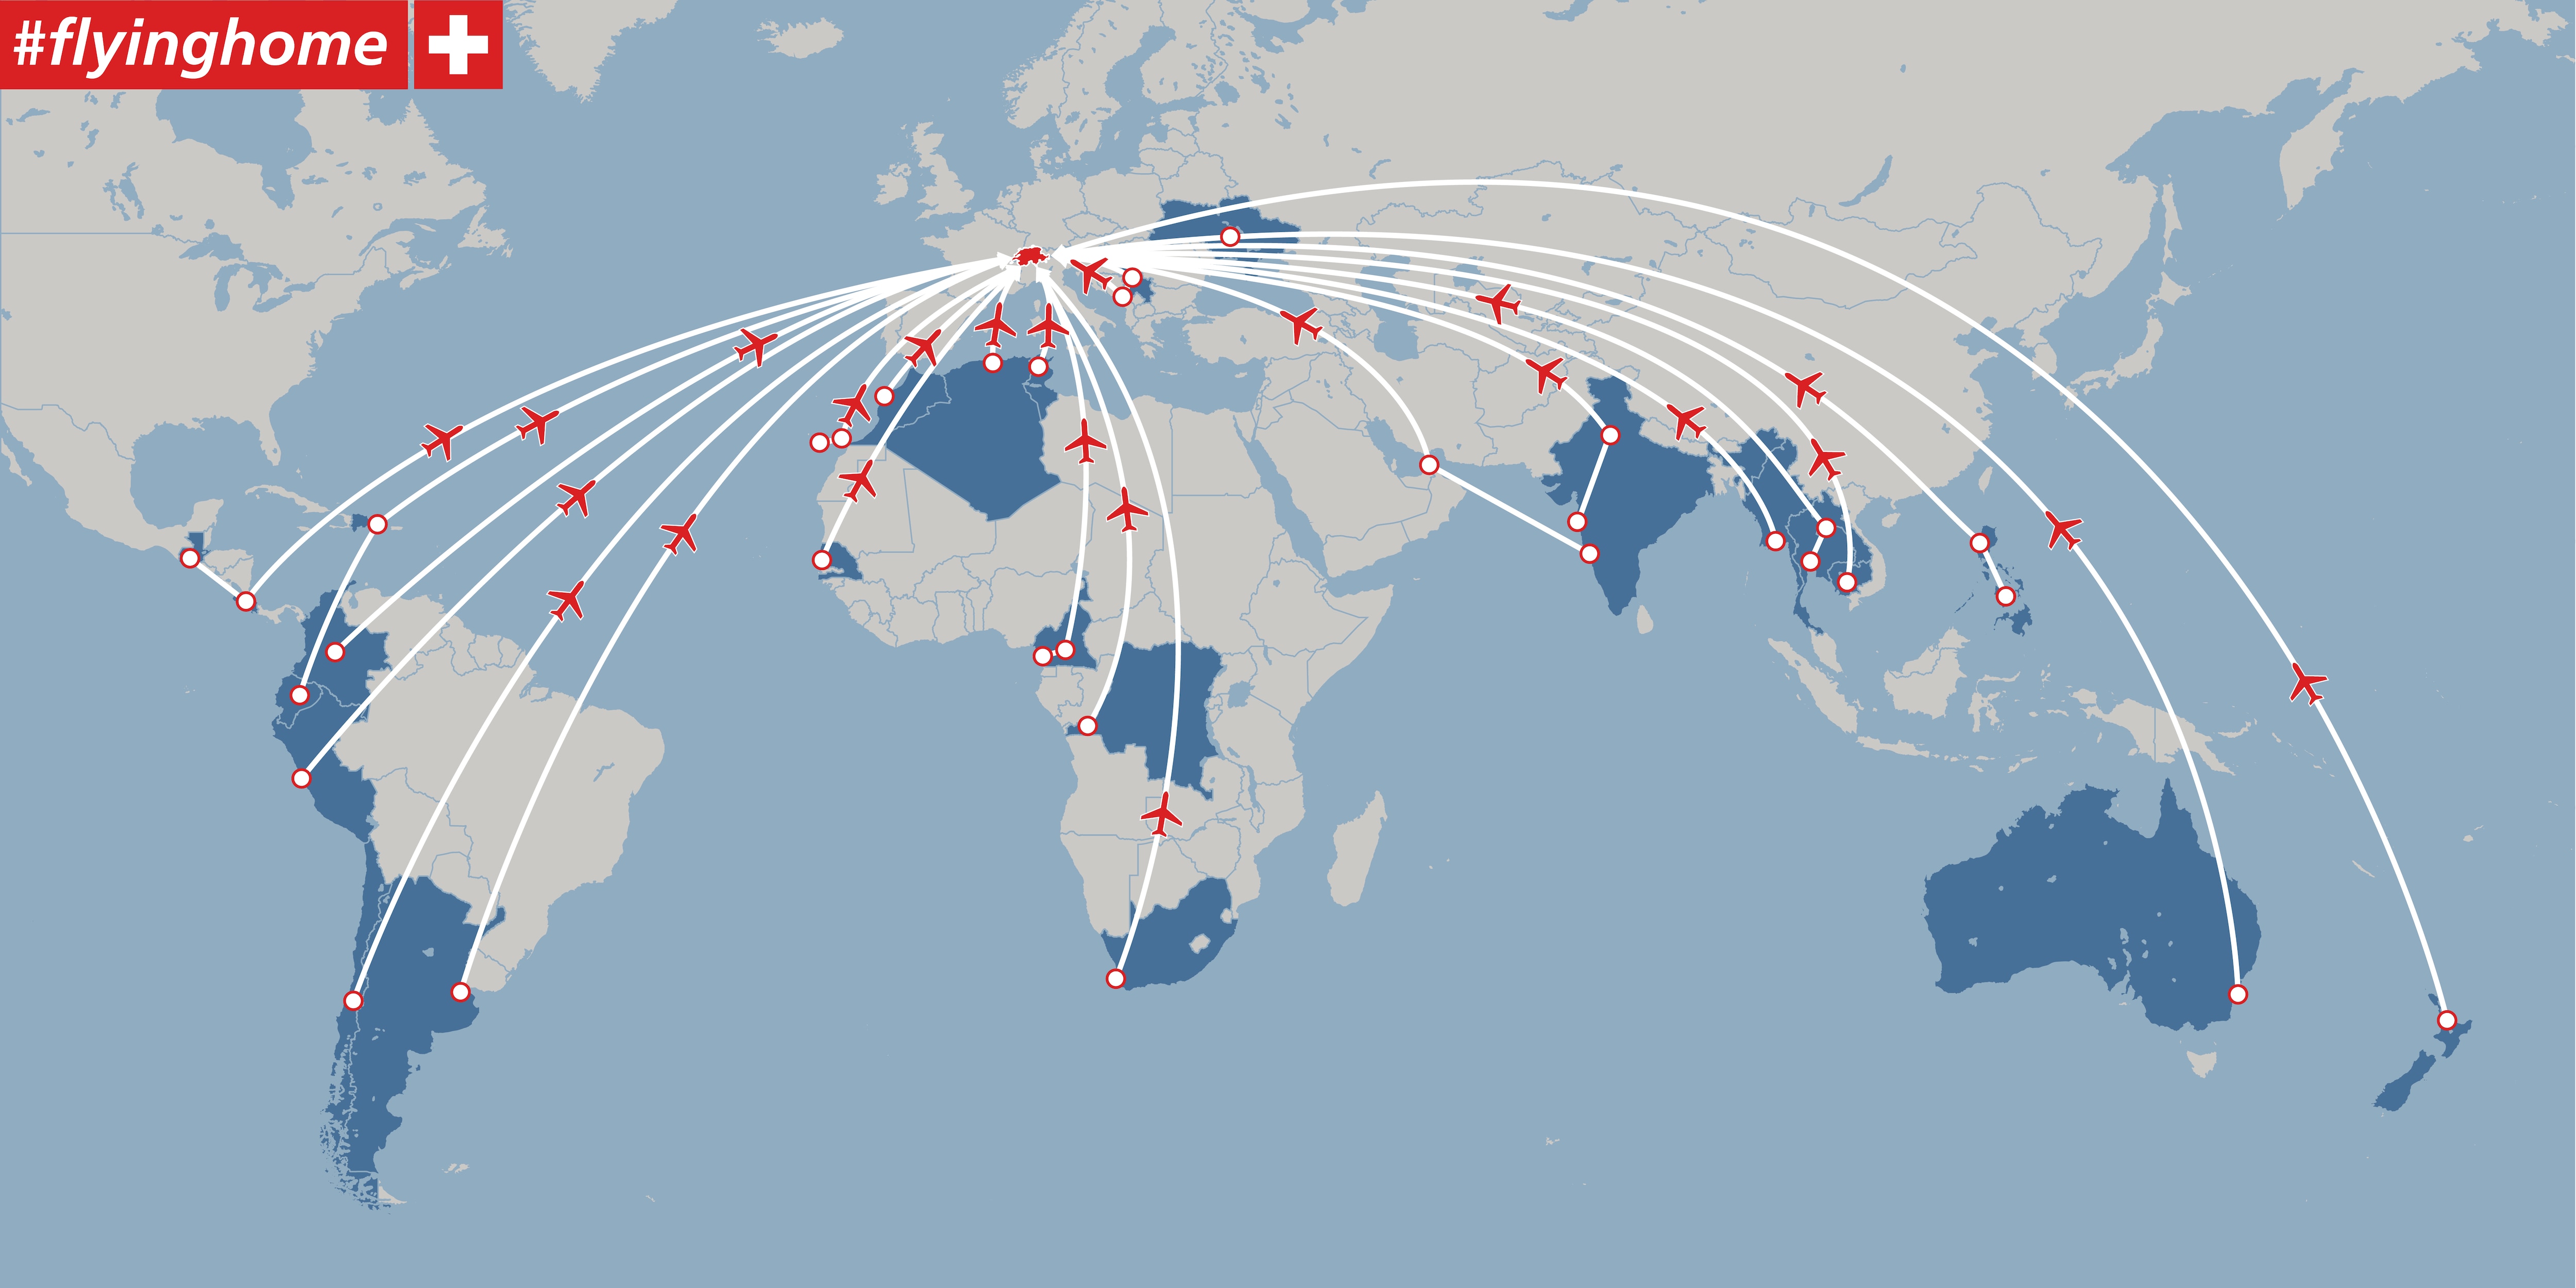 Mappa del mondo con tutti i voli di andata e ritorno disegnati in